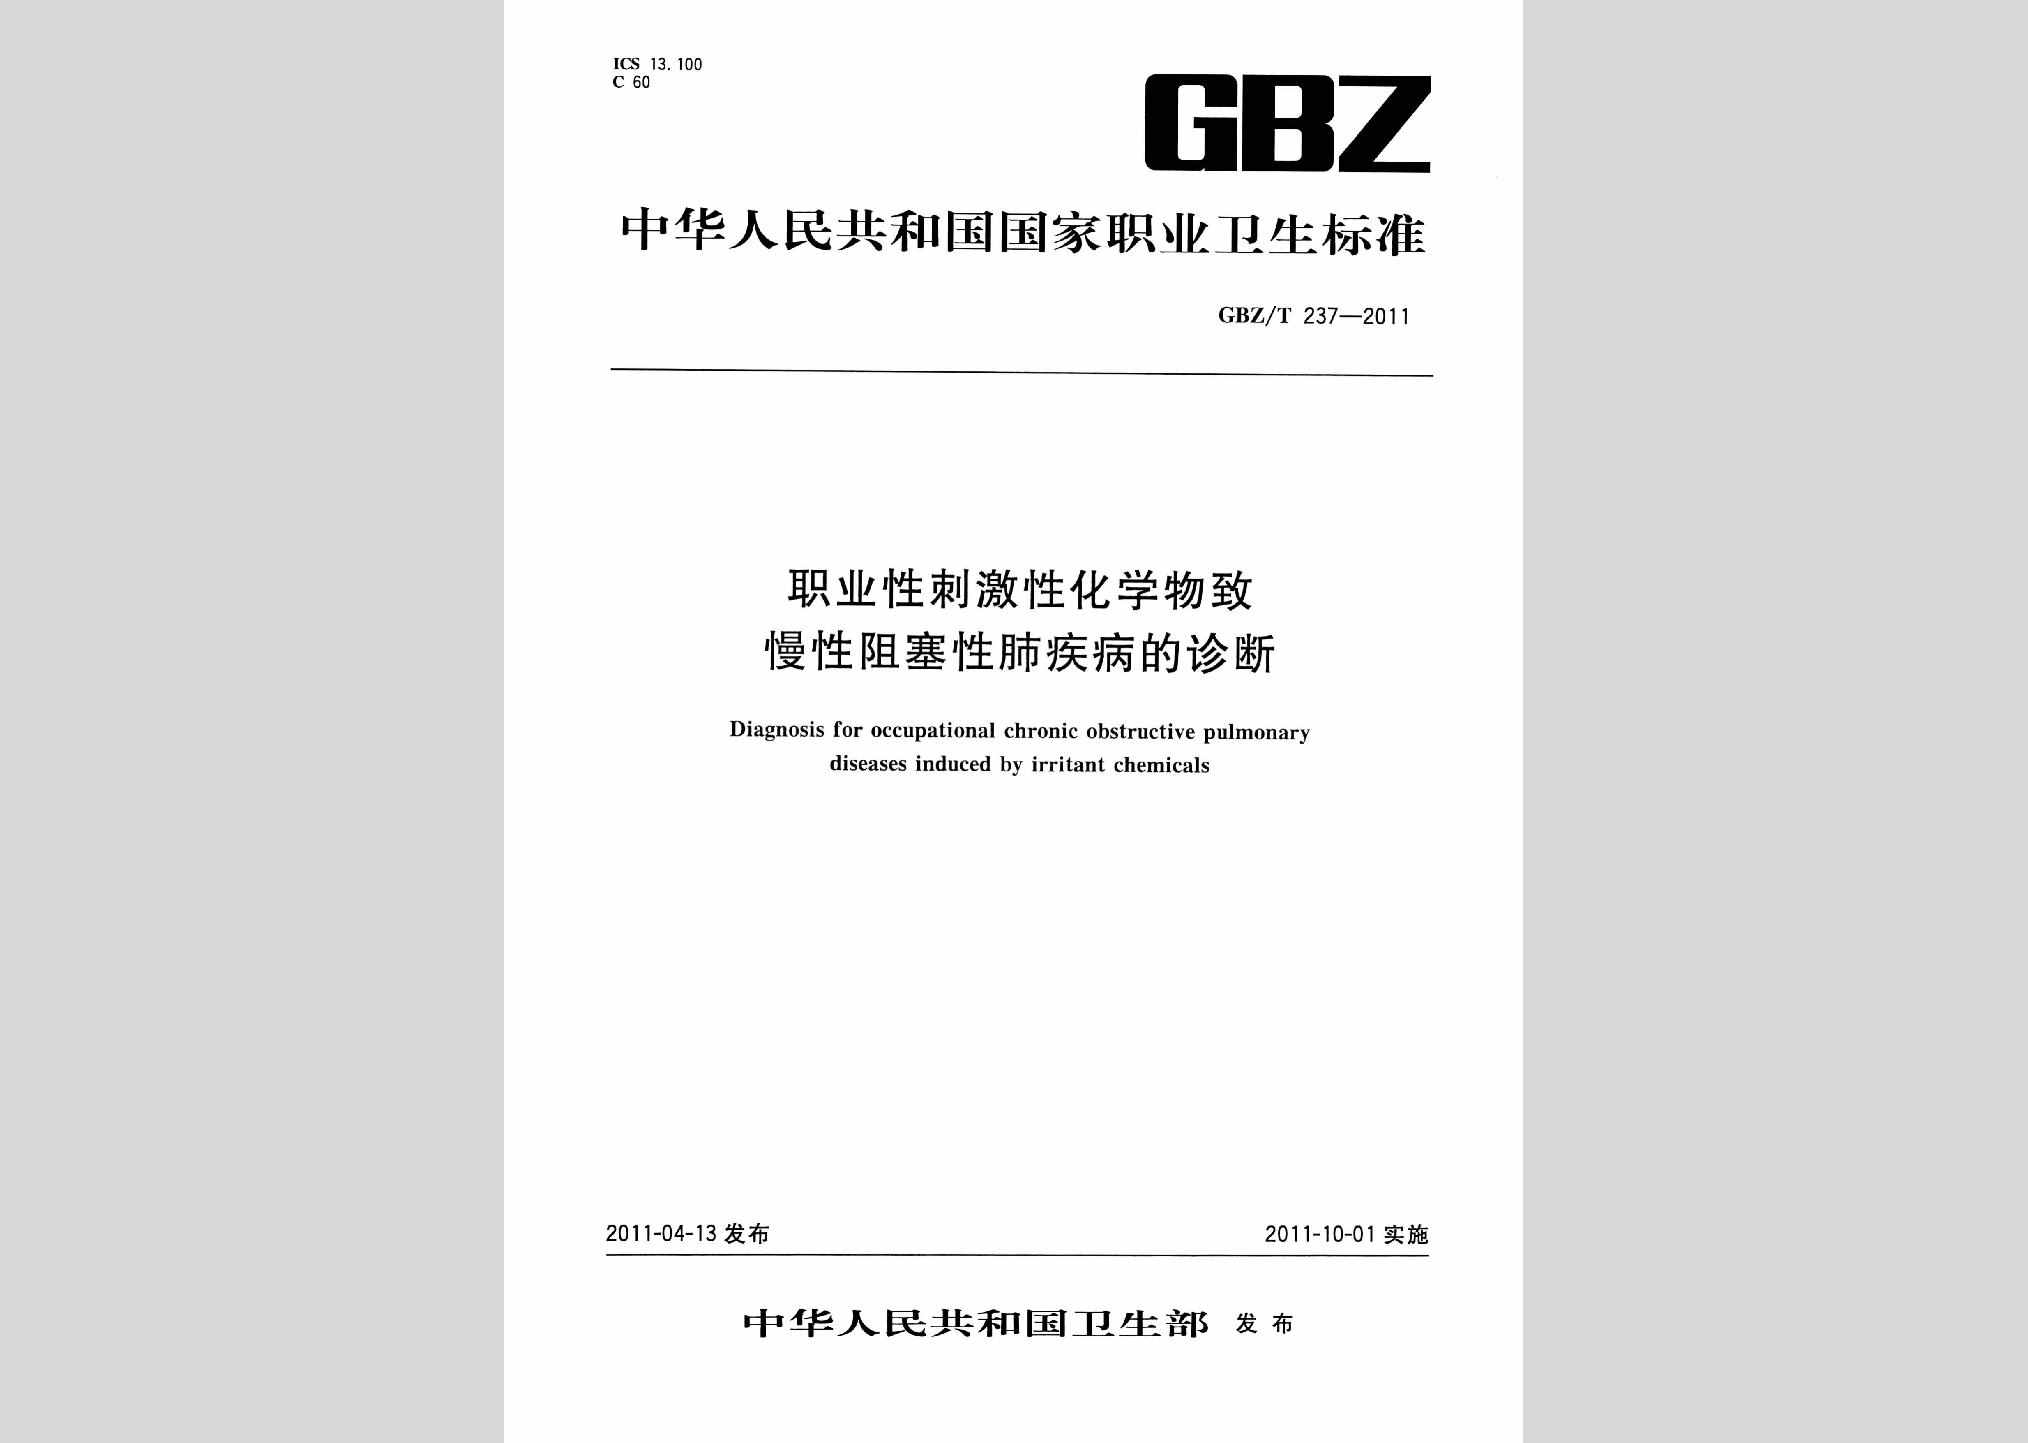 GBZ/T237-2011：职业性刺激性化学物致慢性阻塞性肺疾病的诊断